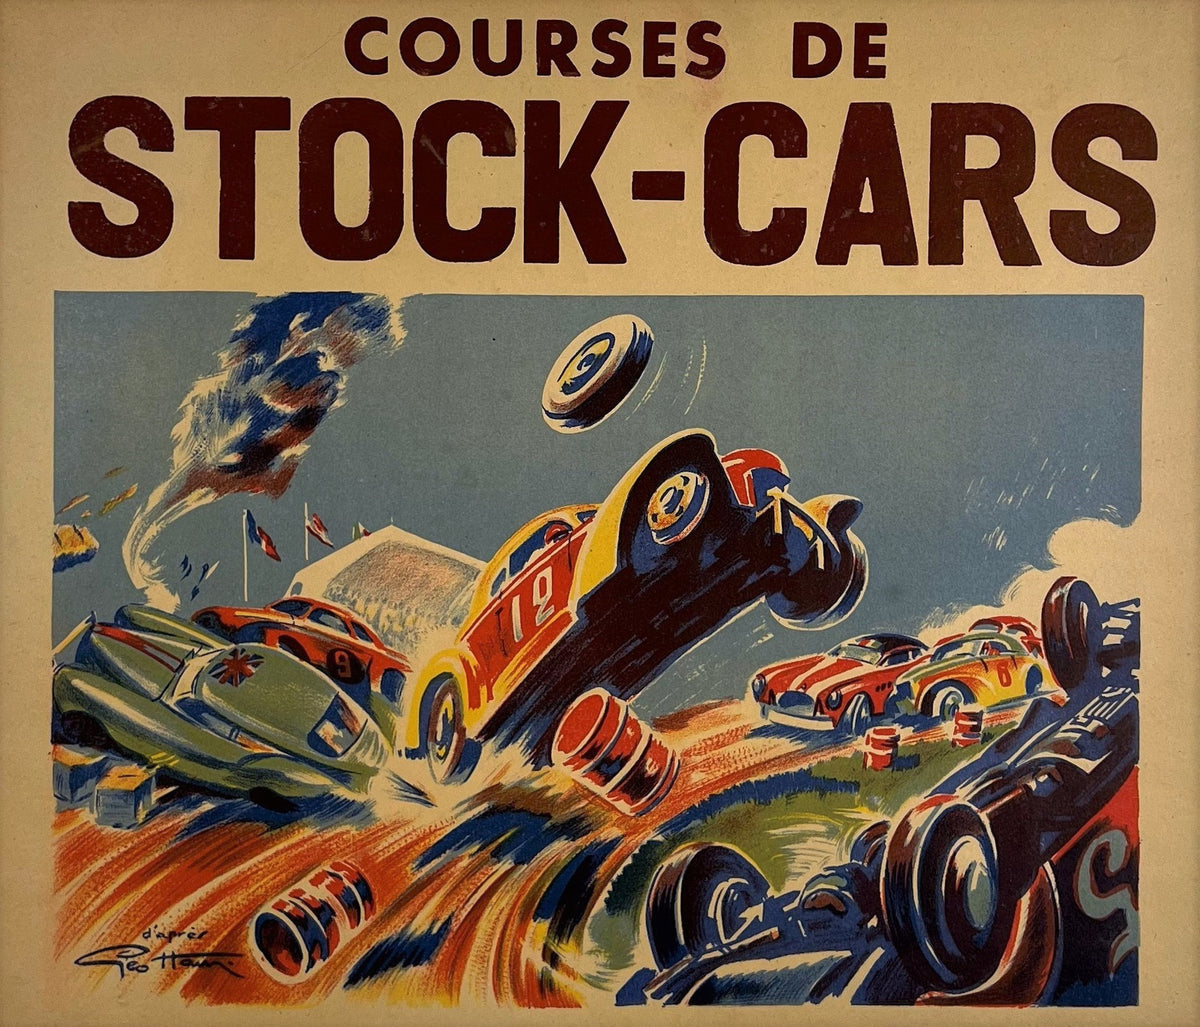 Courses de Stock-Cars - Authentic Vintage Poster